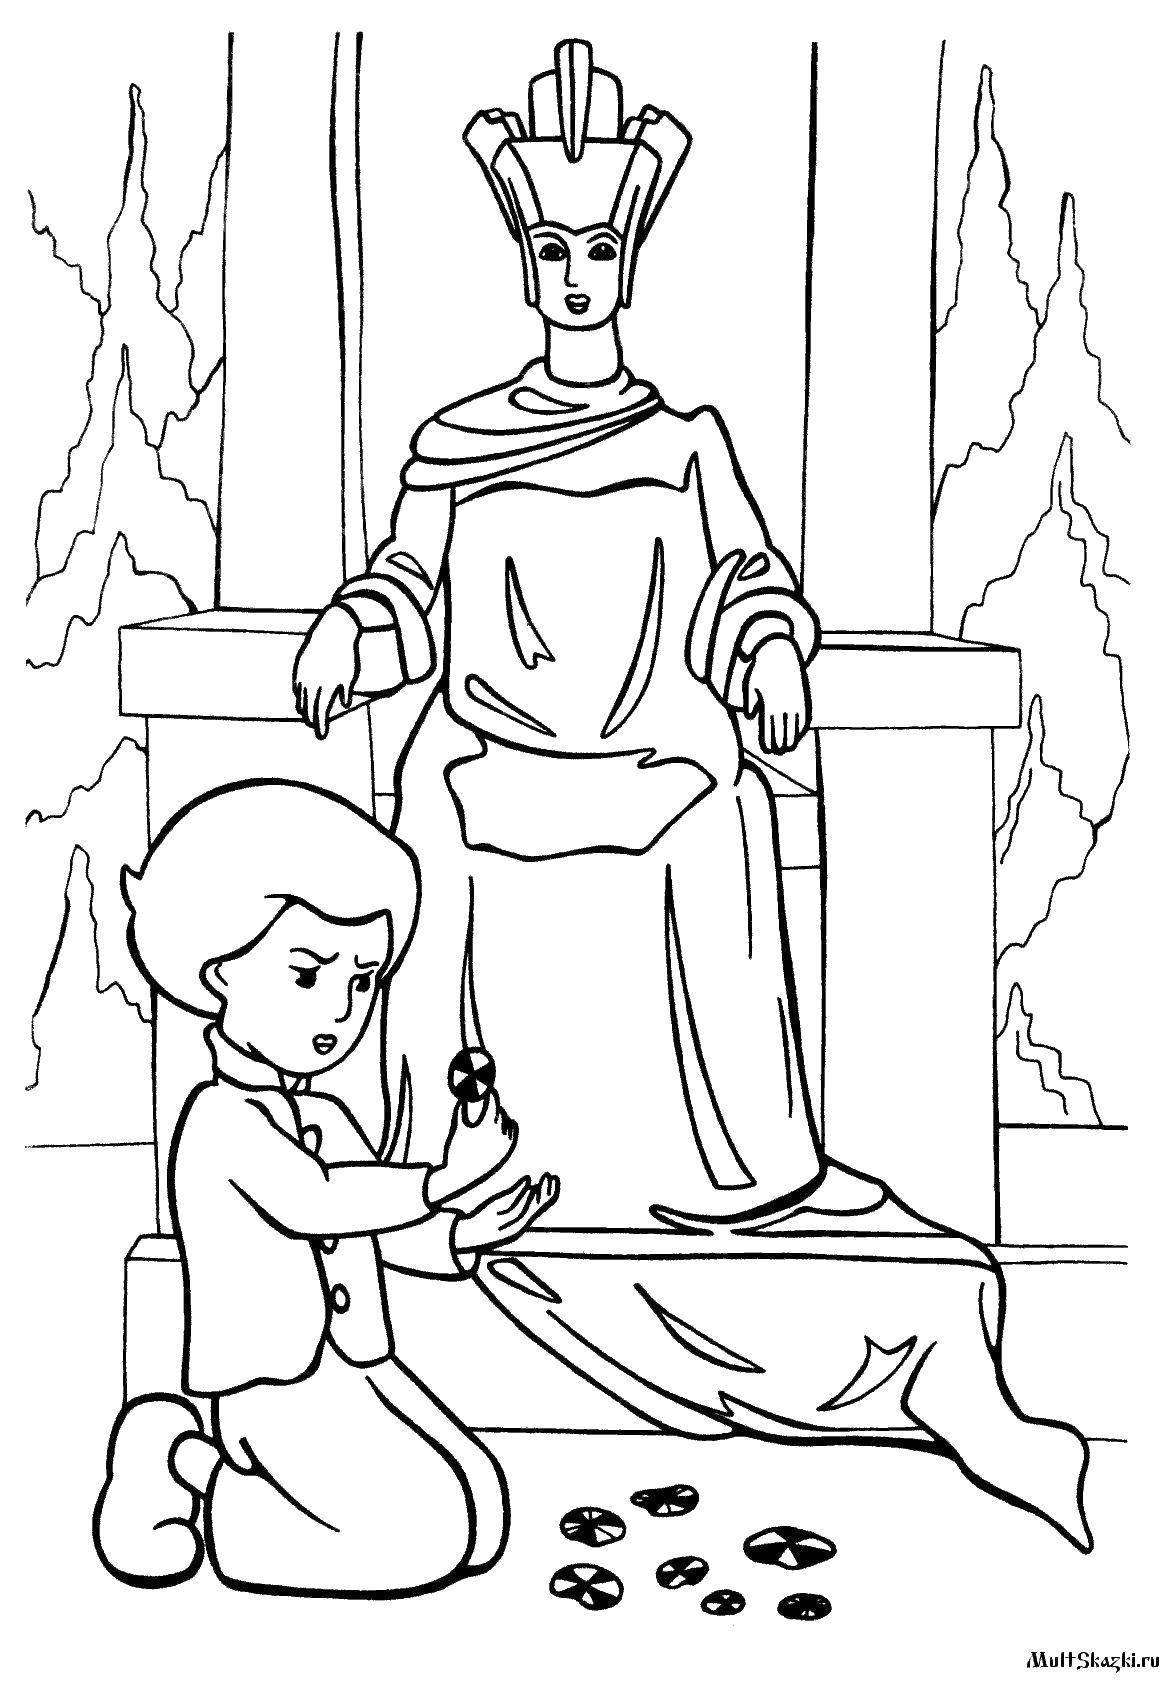 Опис: розмальовки  Кай і снігова королева на троні. Категорія: Казки. Теги:  Казки.